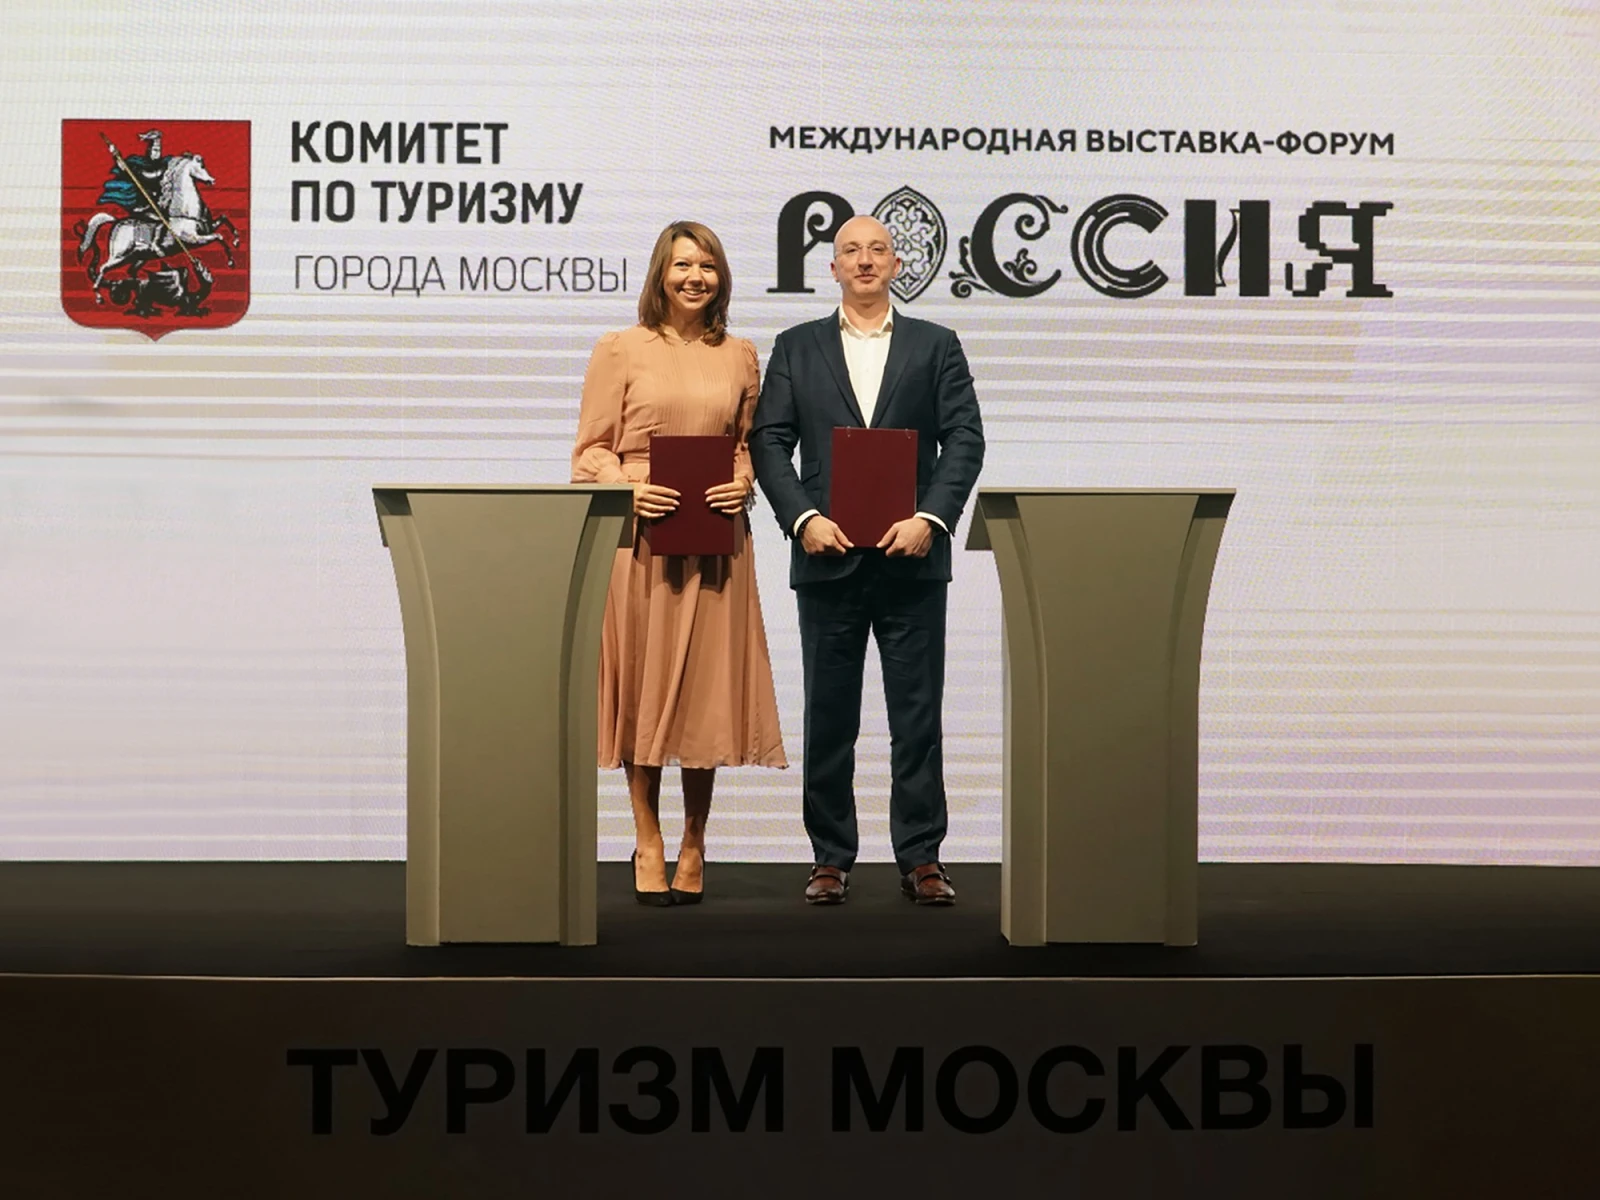 Международная выставка-форум "Россия" и RUSSPASS объявили о партнёрстве